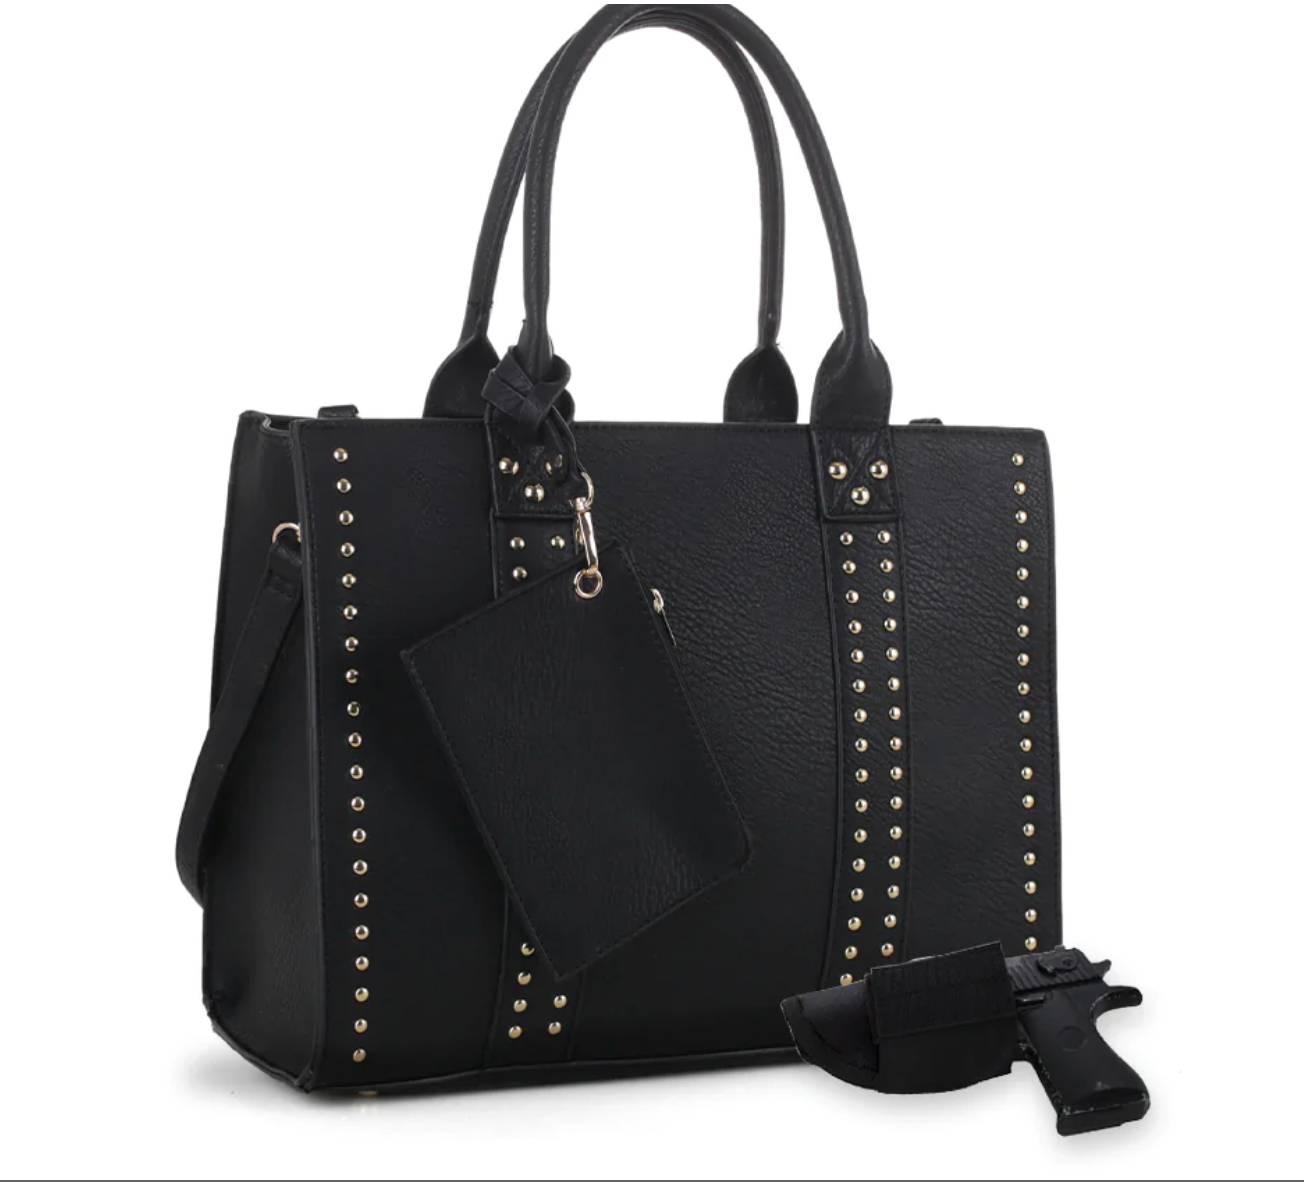 Concealed Carry Handbag - Jessie James